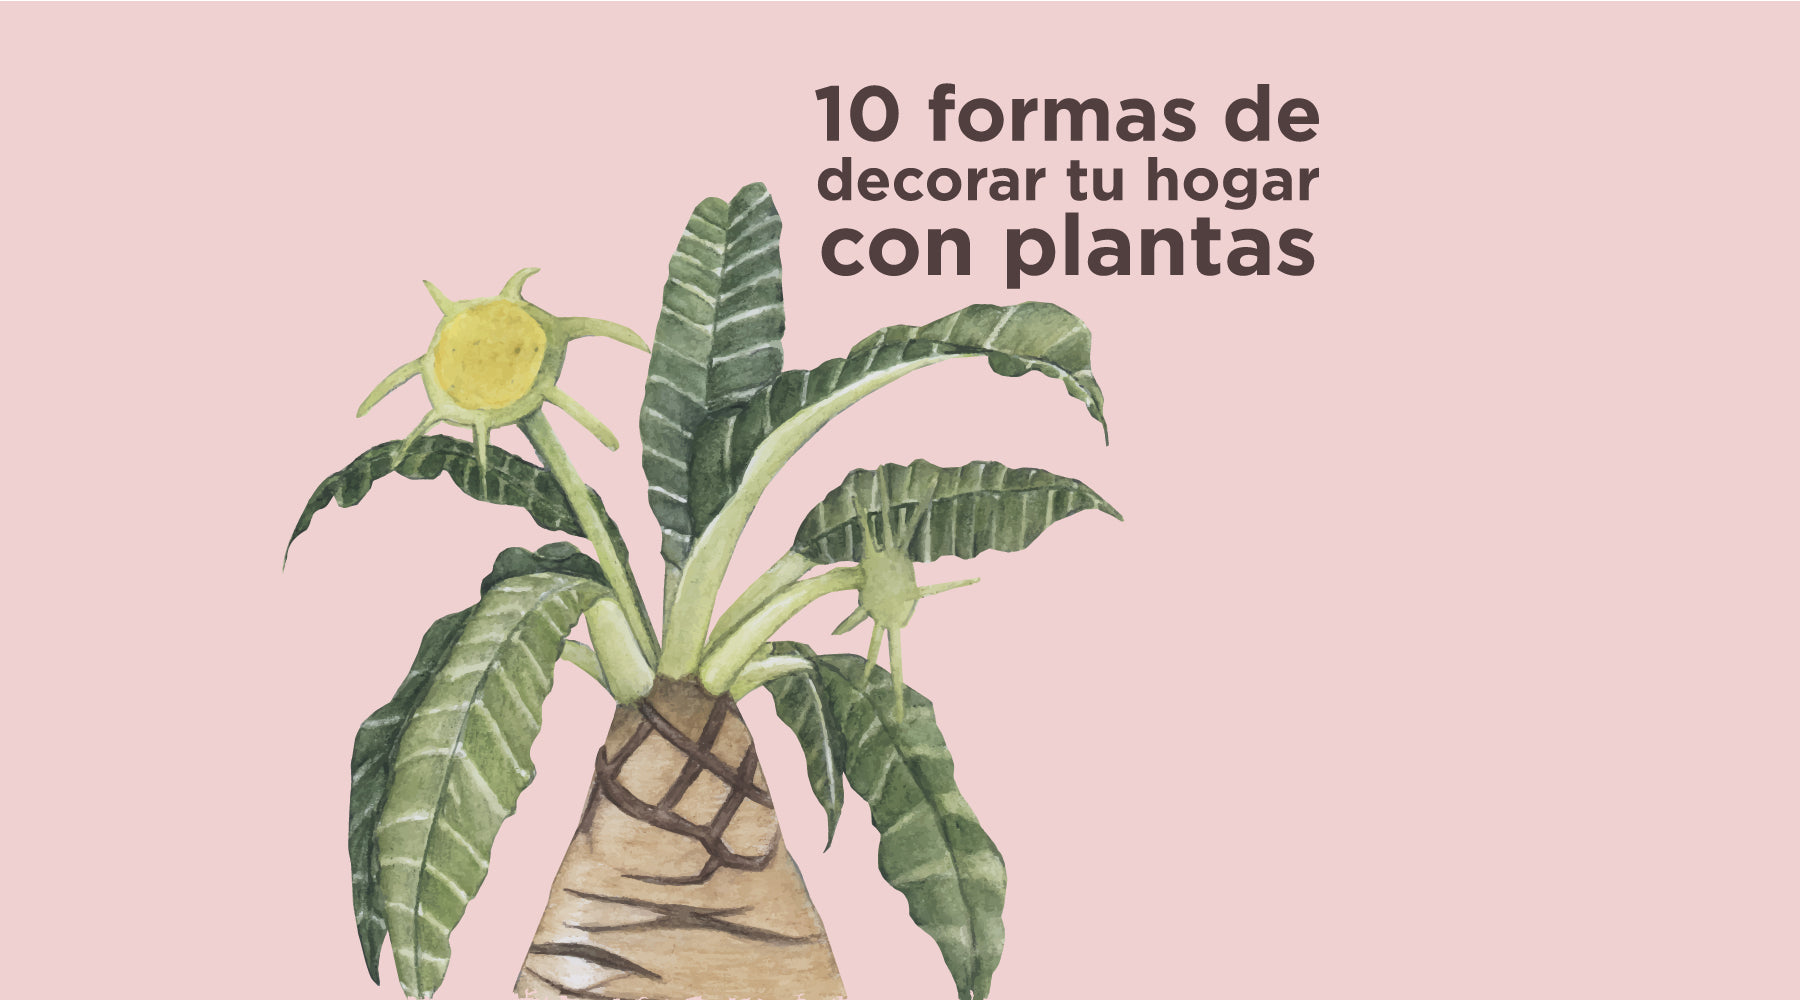 10 Ideas para decorar el Hogar con plantas - Villarreal Muebles Monterrey